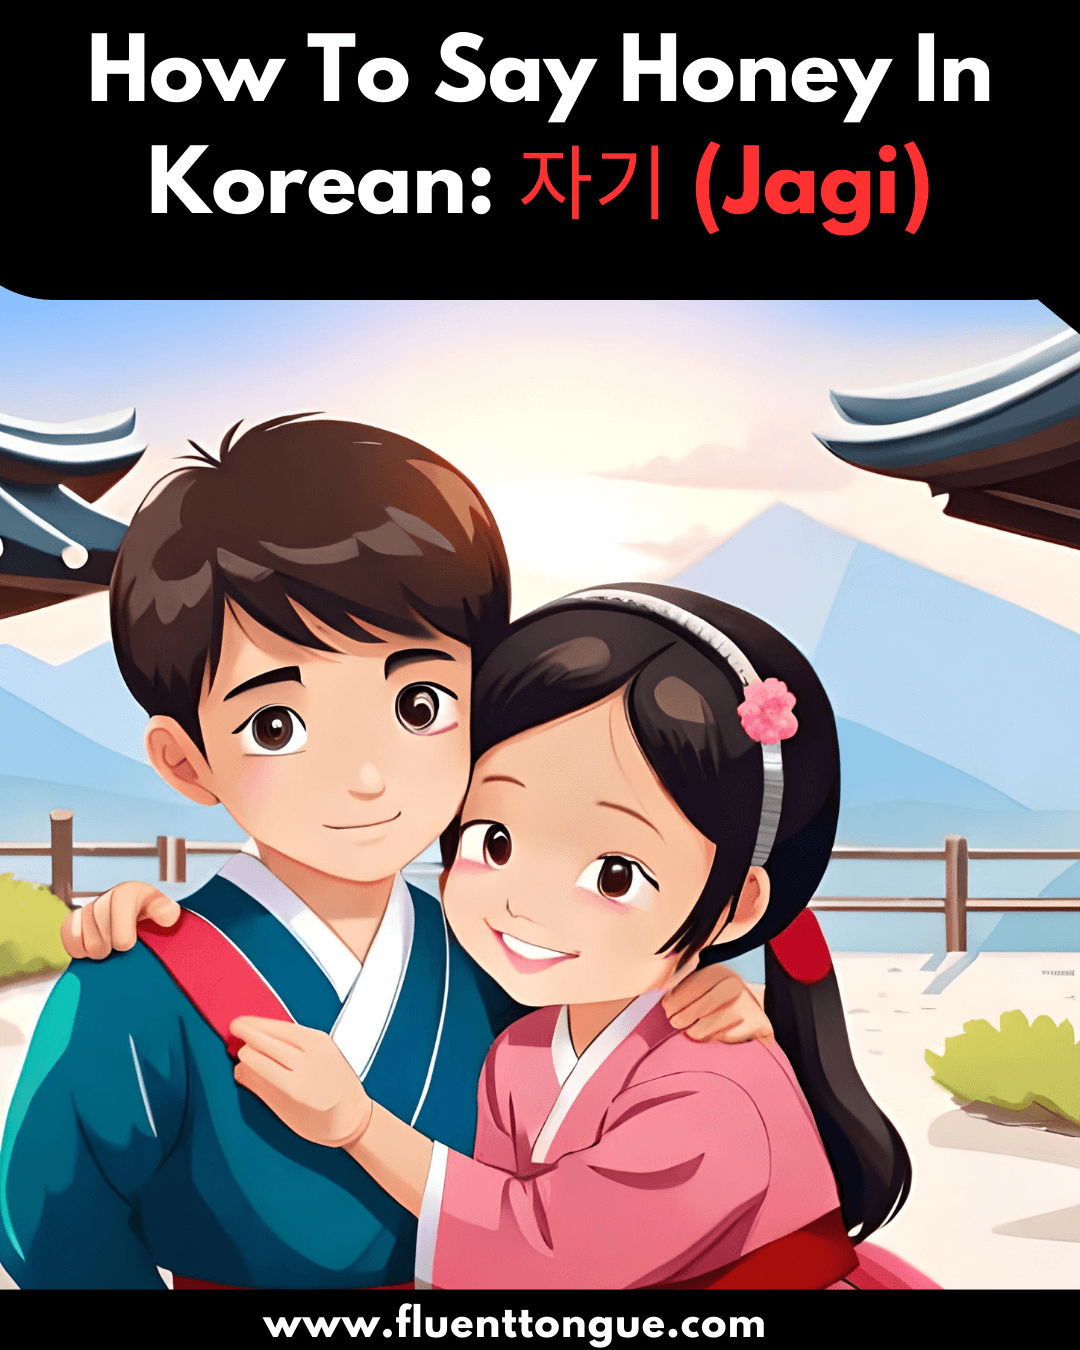 how to say Honey in Korean: 자기 (jagi)